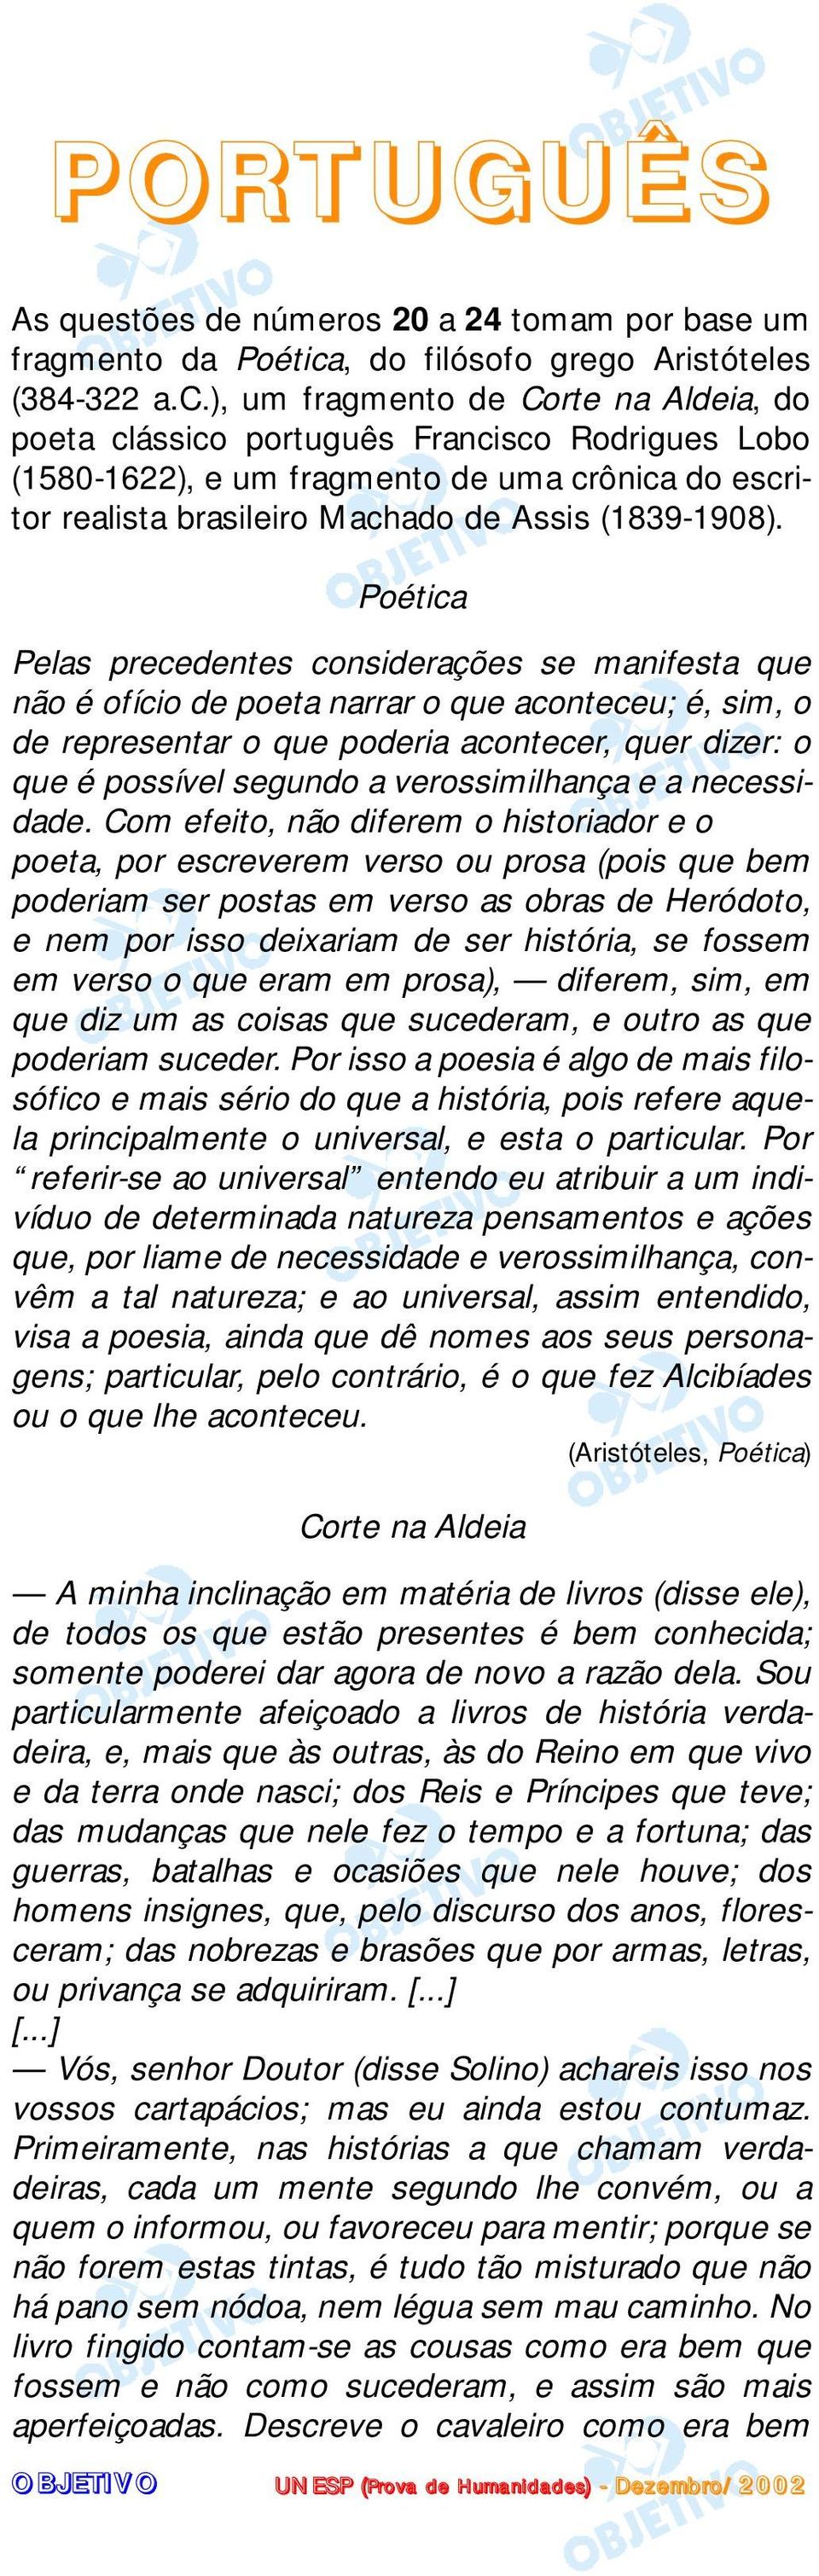 ), um fragmento de Corte na Aldeia, do poeta clássico português Francisco Rodrigues Lobo (1580-1622), e um fragmento de uma crônica do escritor realista brasileiro Machado de Assis (1839-1908).